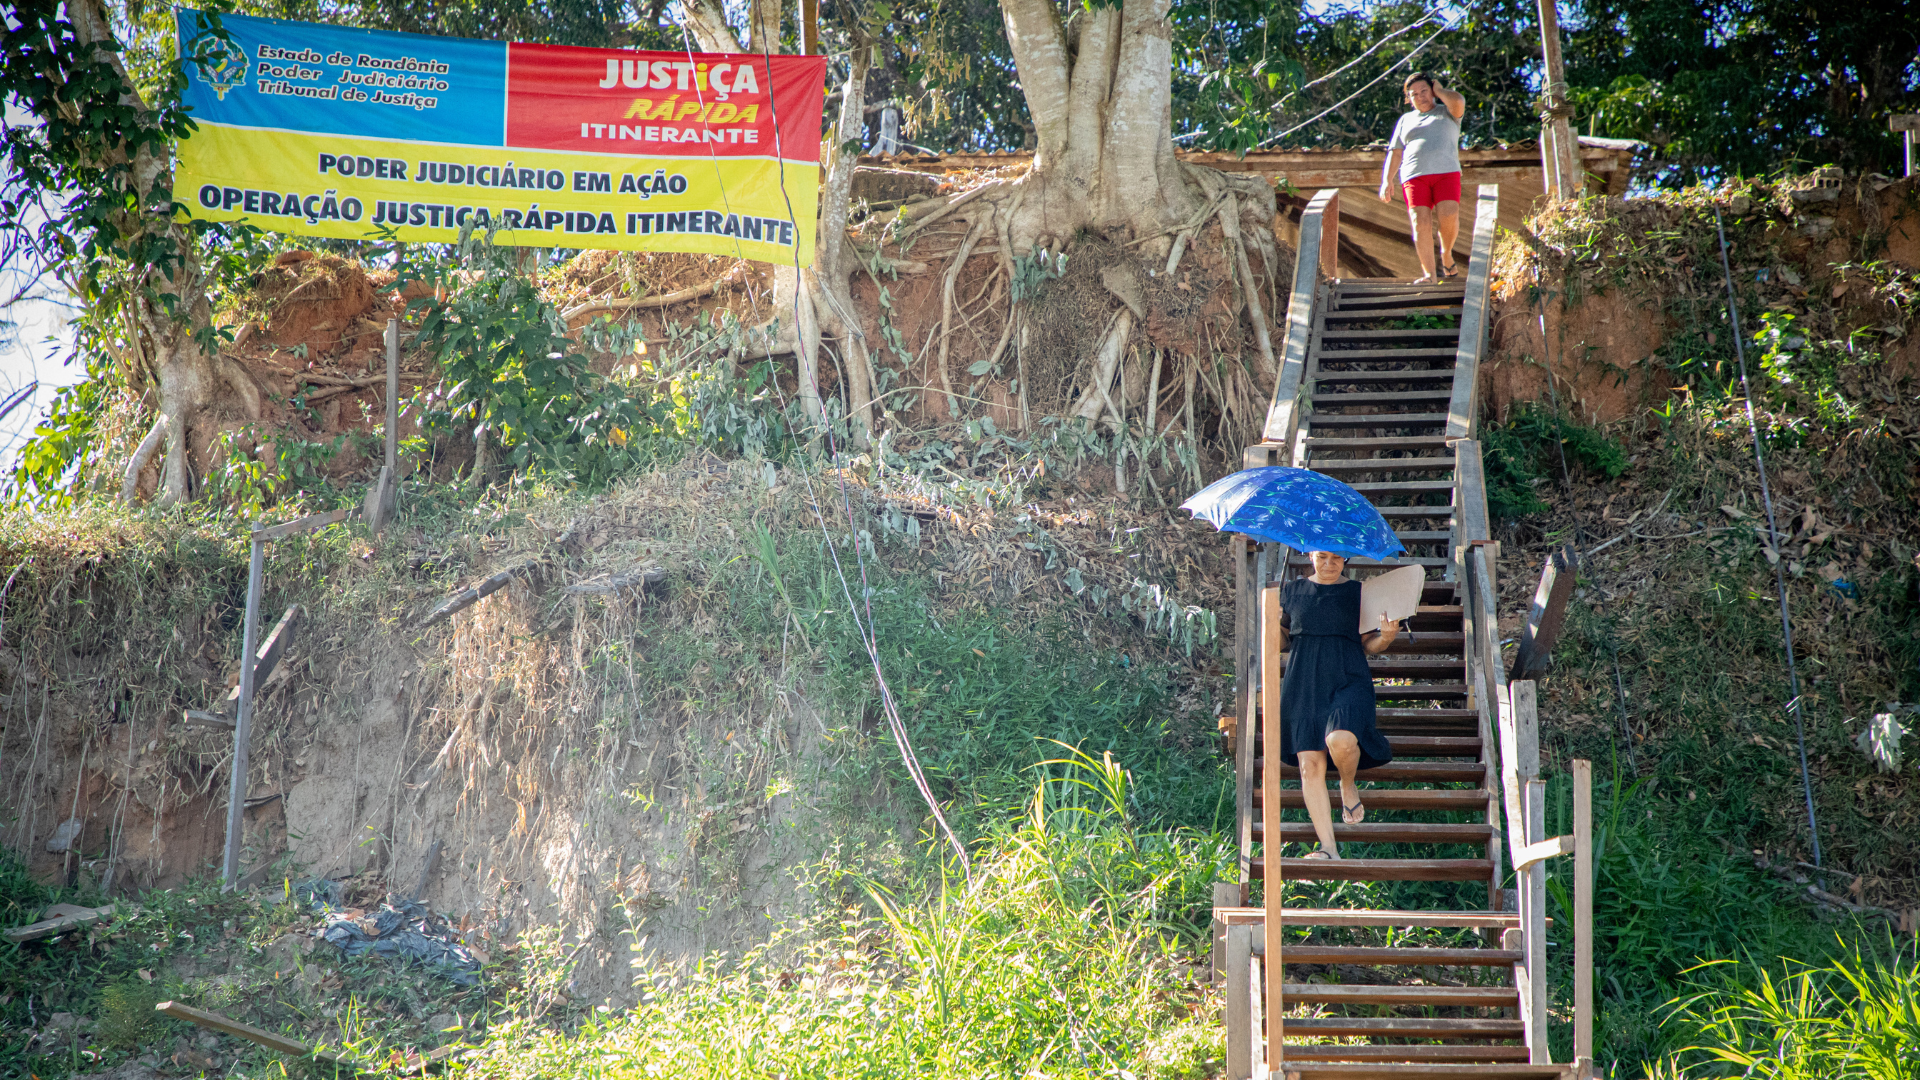 Garantia de direitos à população: Justiça Rápida Itinerante oferta atendimentos nos distritos de Porto Velho